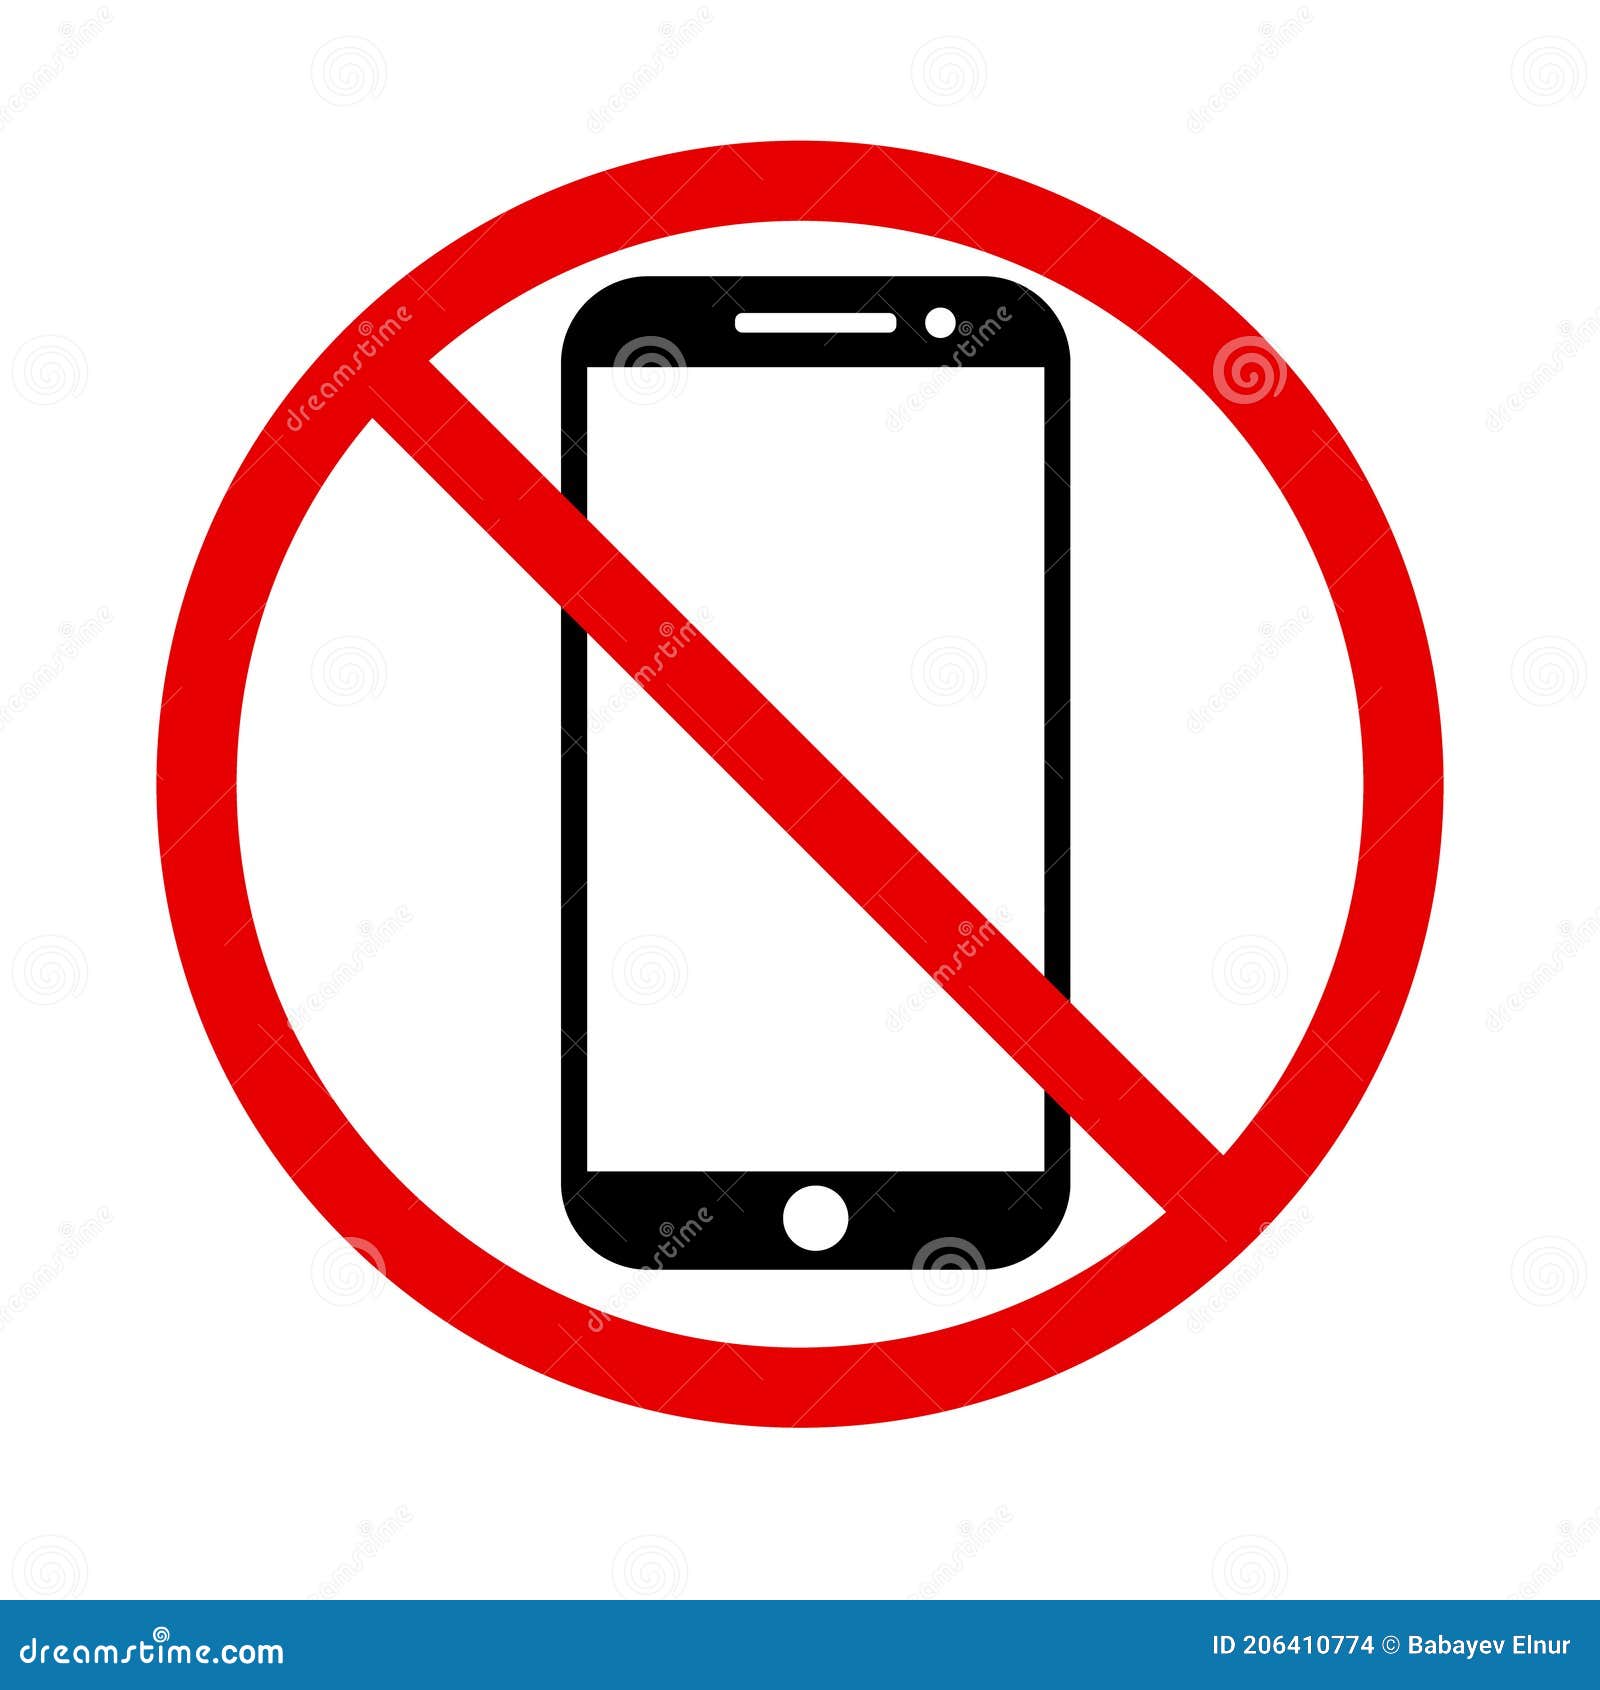 Teléfono celular - Iconos gratis de tecnología